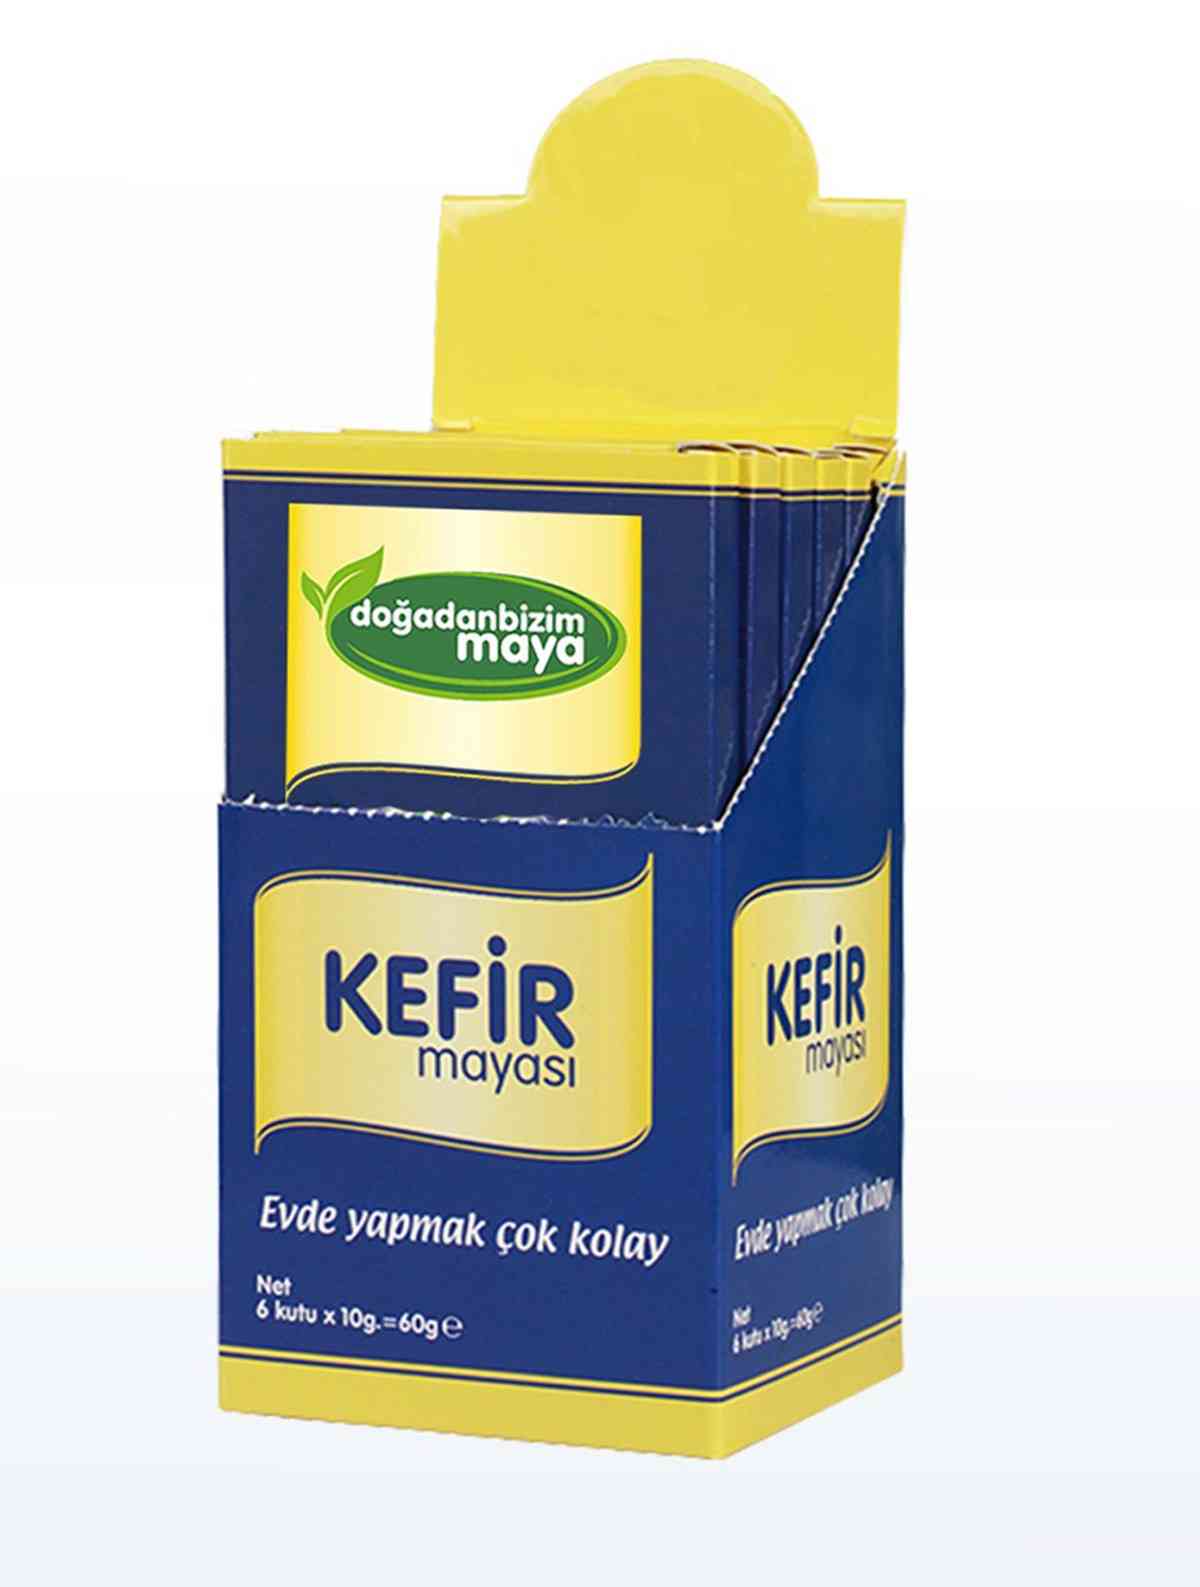 Kefir gær, let til kefir, probiotisk gær voksen og barn, lav, gær let